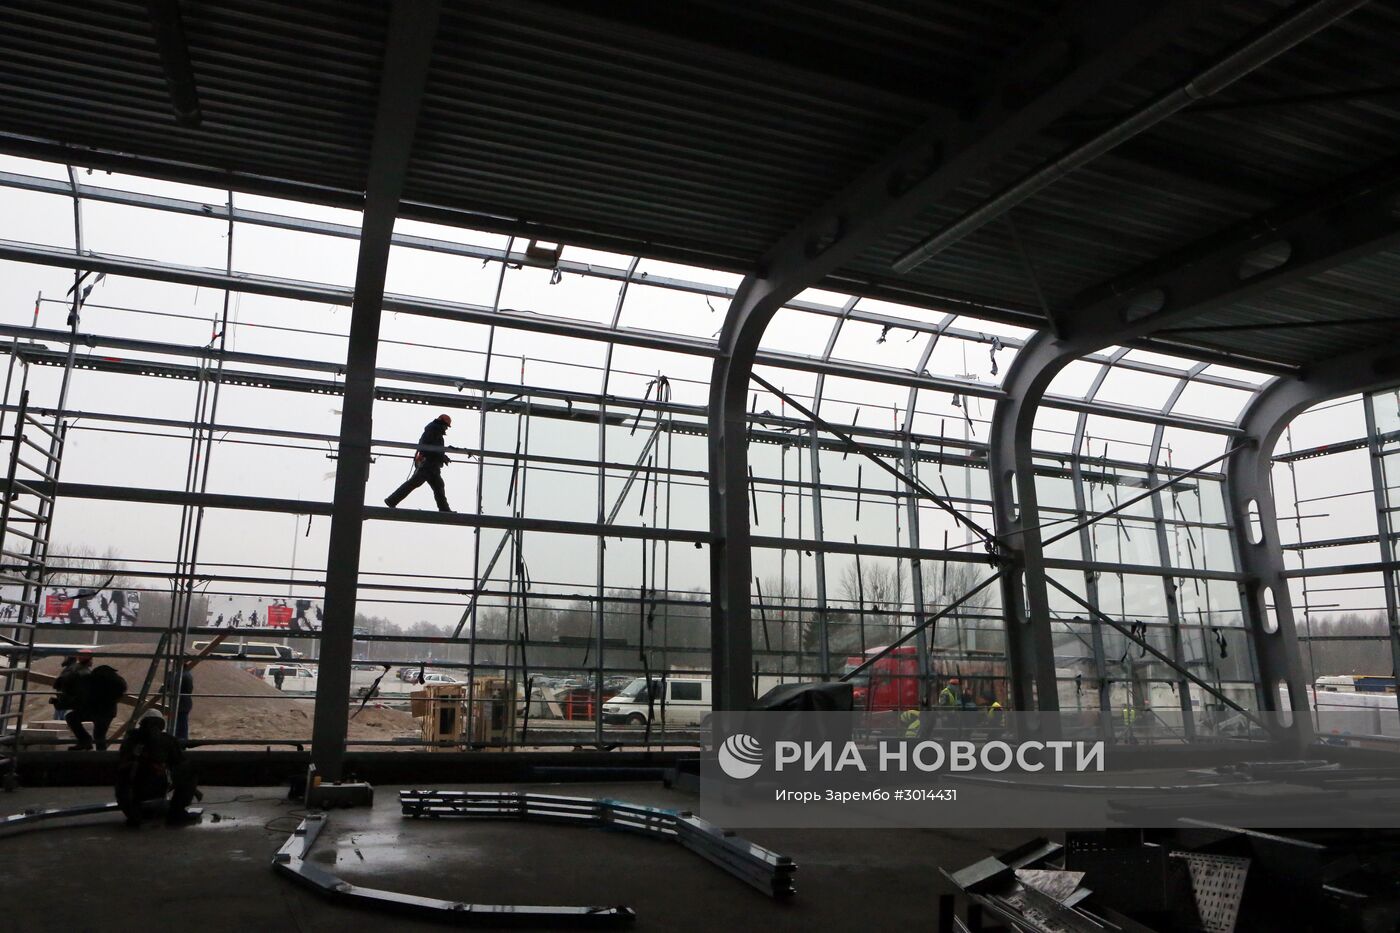 Международный аэропорт "Храброво" в Калининграде